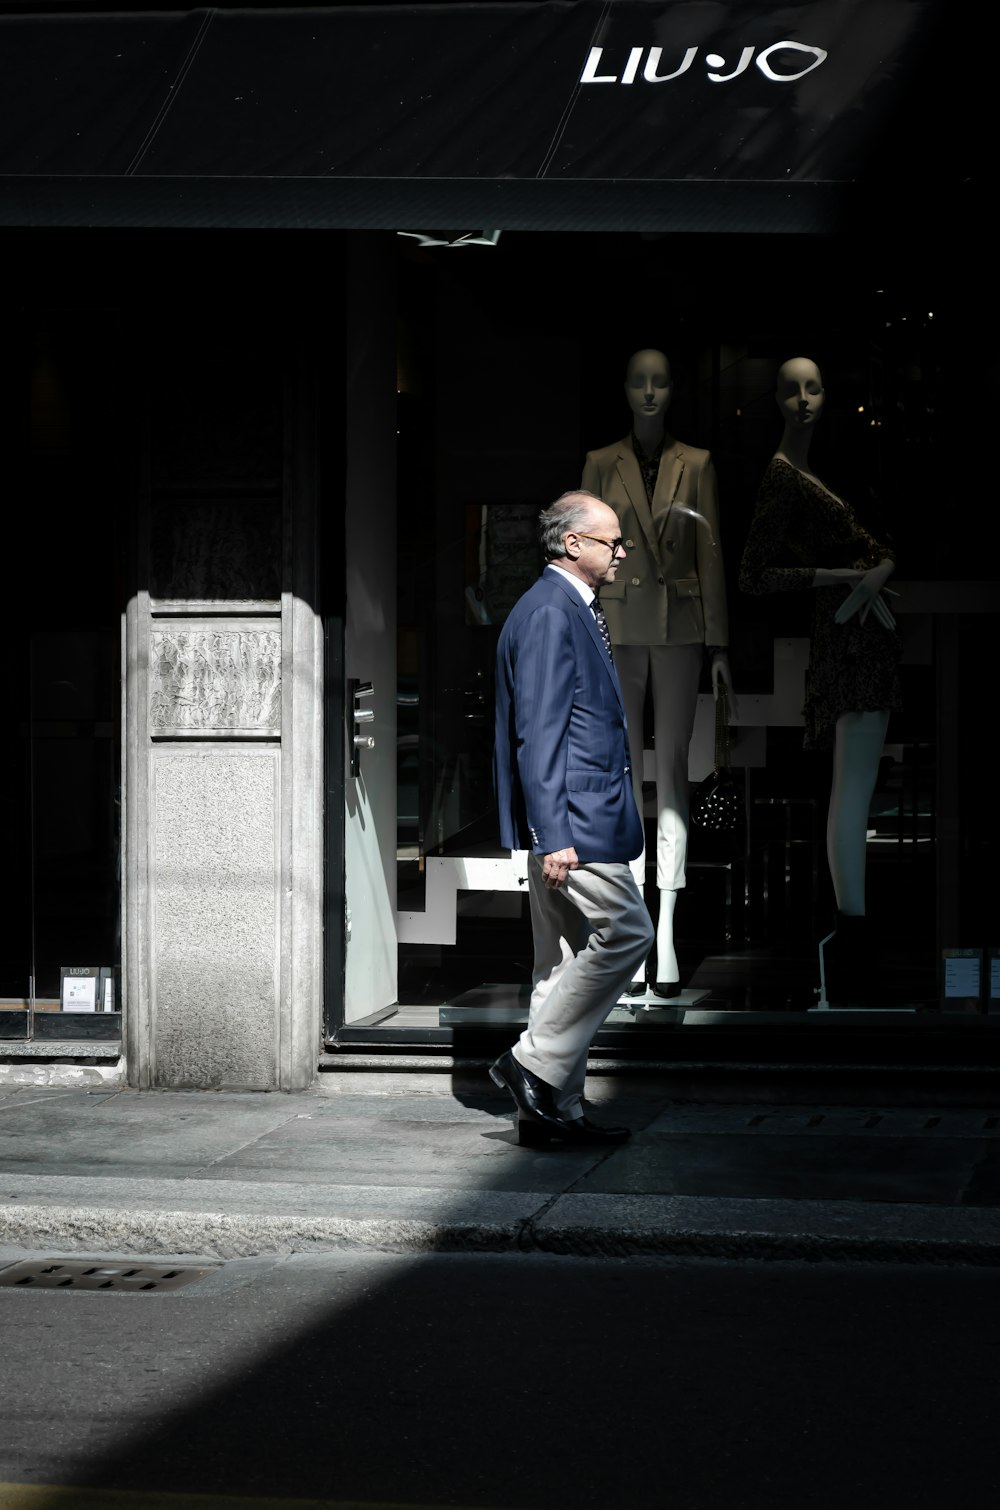 Mann in blauem Hemd und weißer Hose geht tagsüber auf dem Bürgersteig